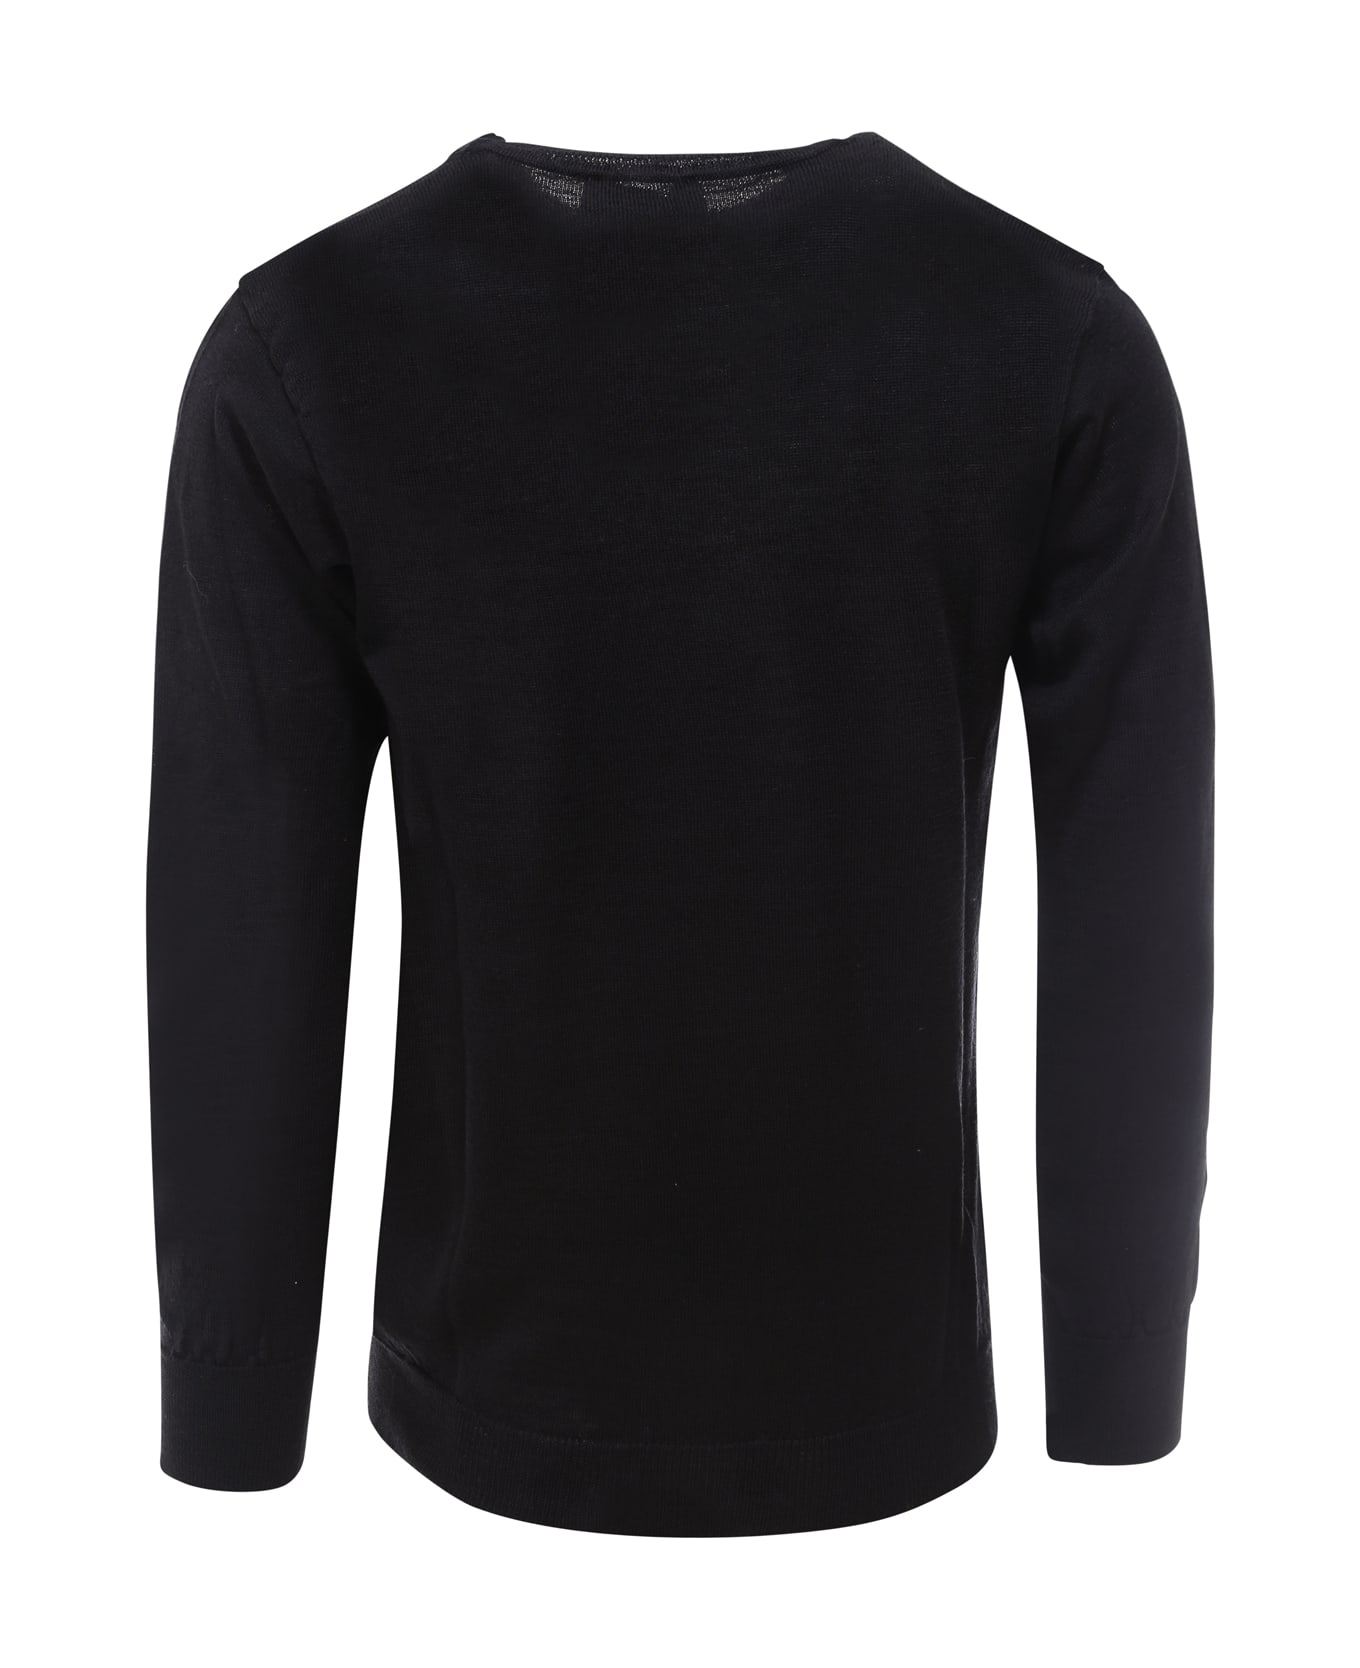 Maison Flaneur Sweater - Black